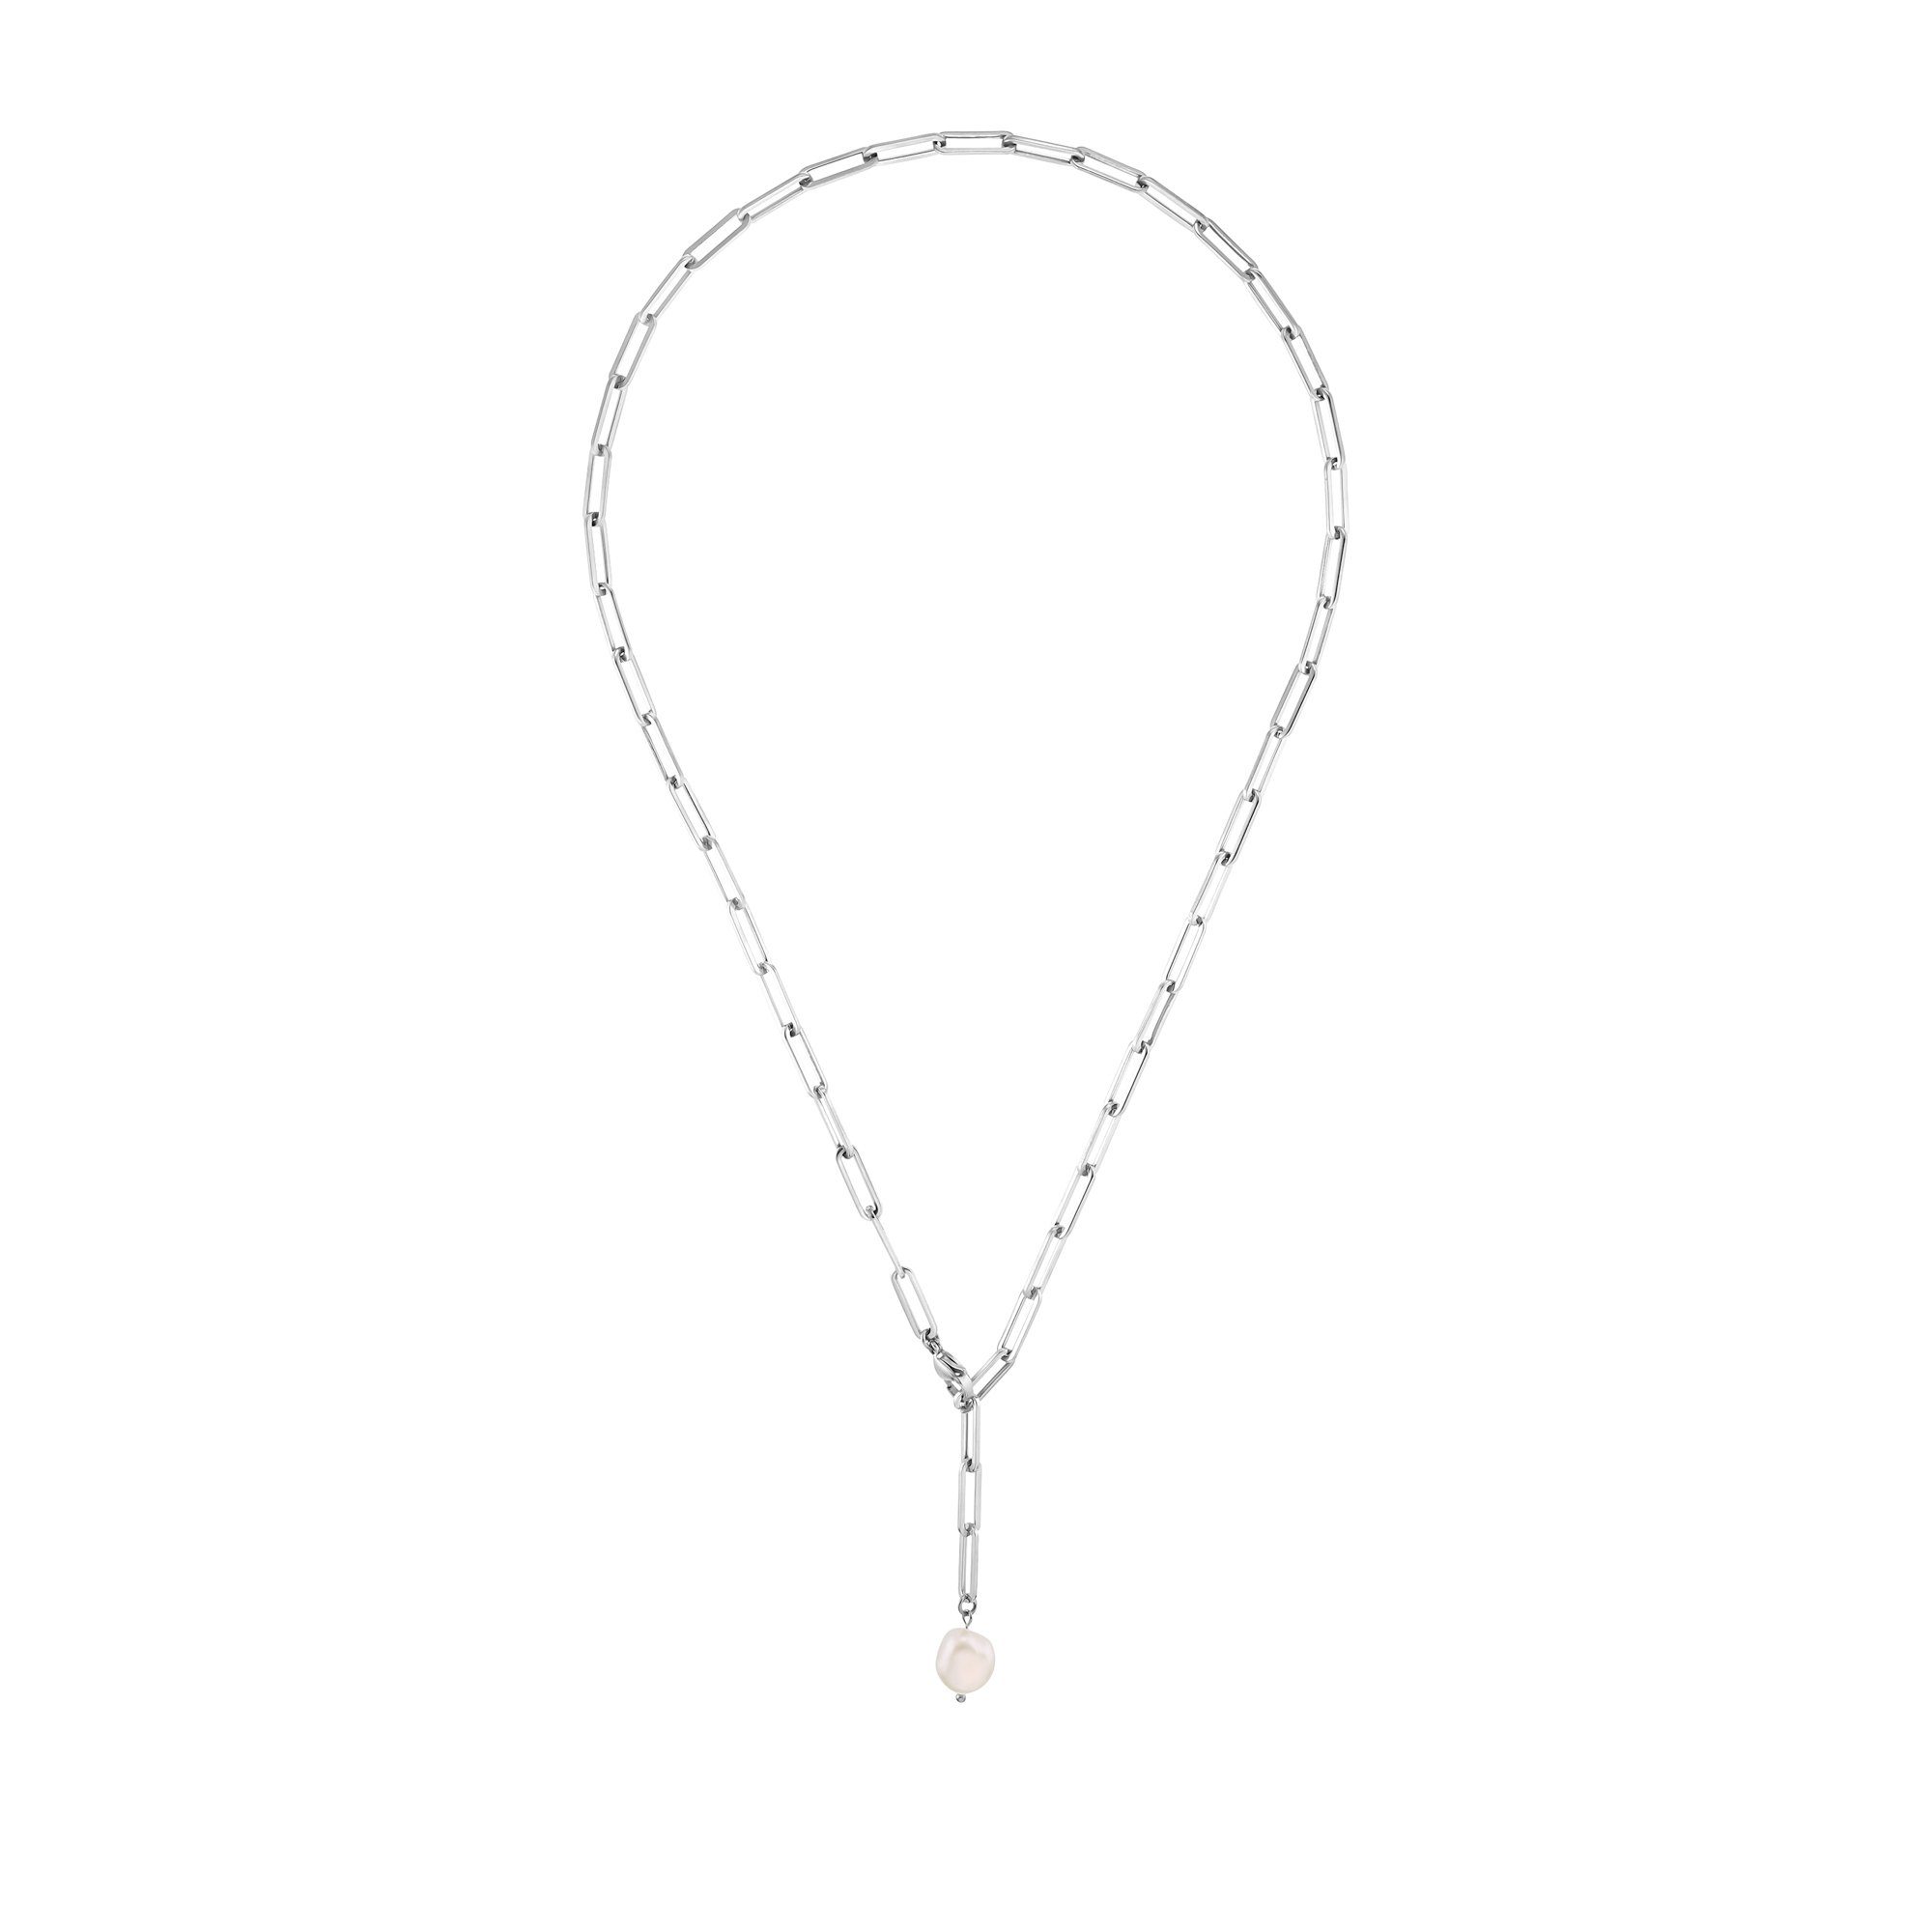 Heideman Collier Gaby silberfarben poliert (inkl. Geschenkverpackung), Kette für Frauen mit ausgefallenen Perlen